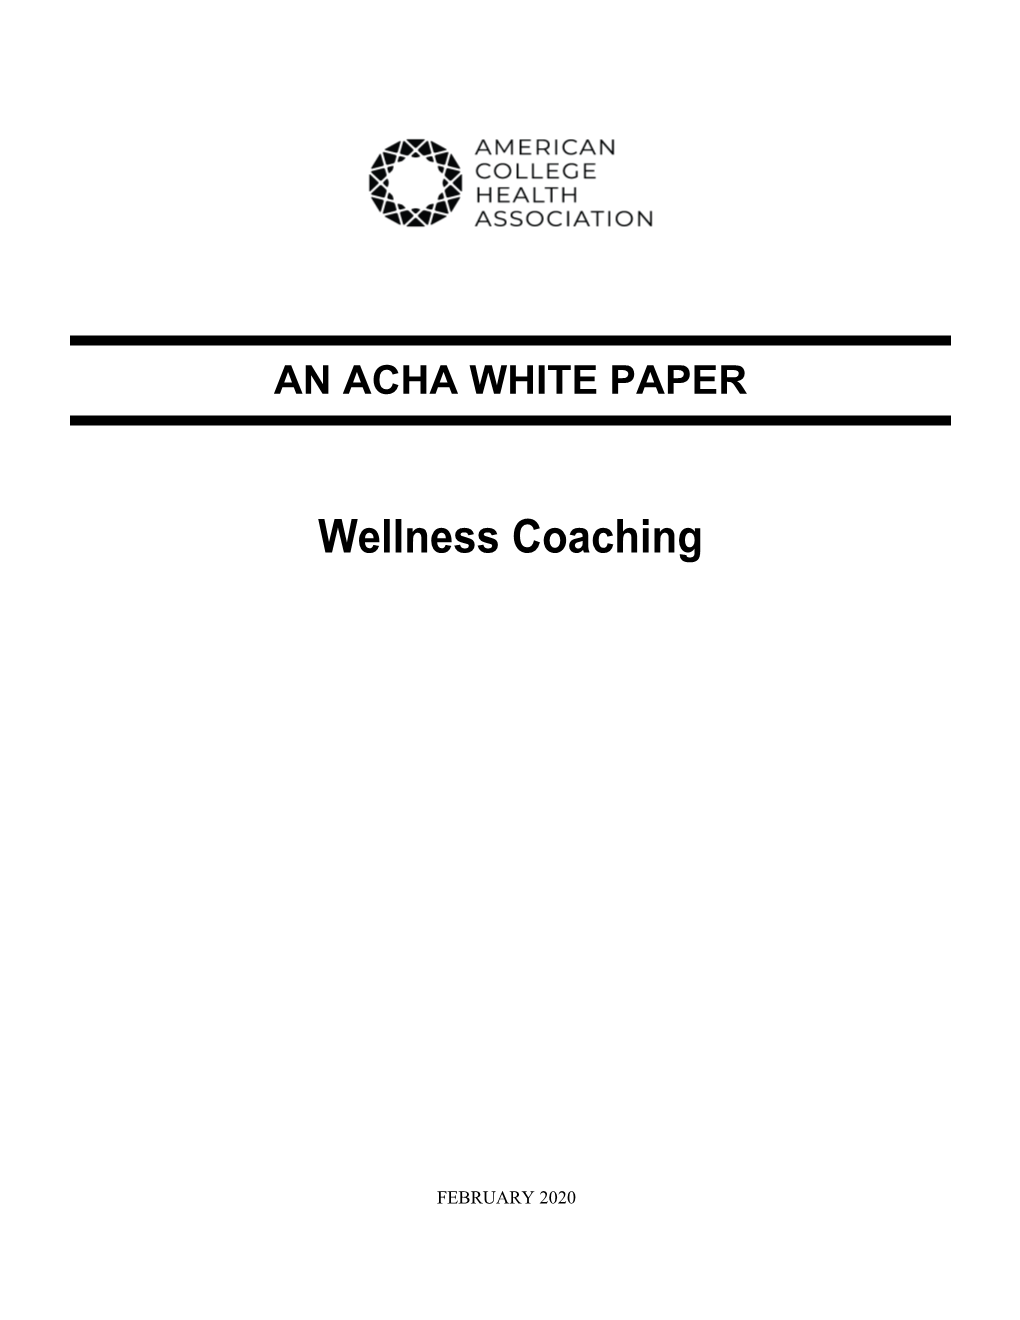 Wellness Coaching ACHA White Paper